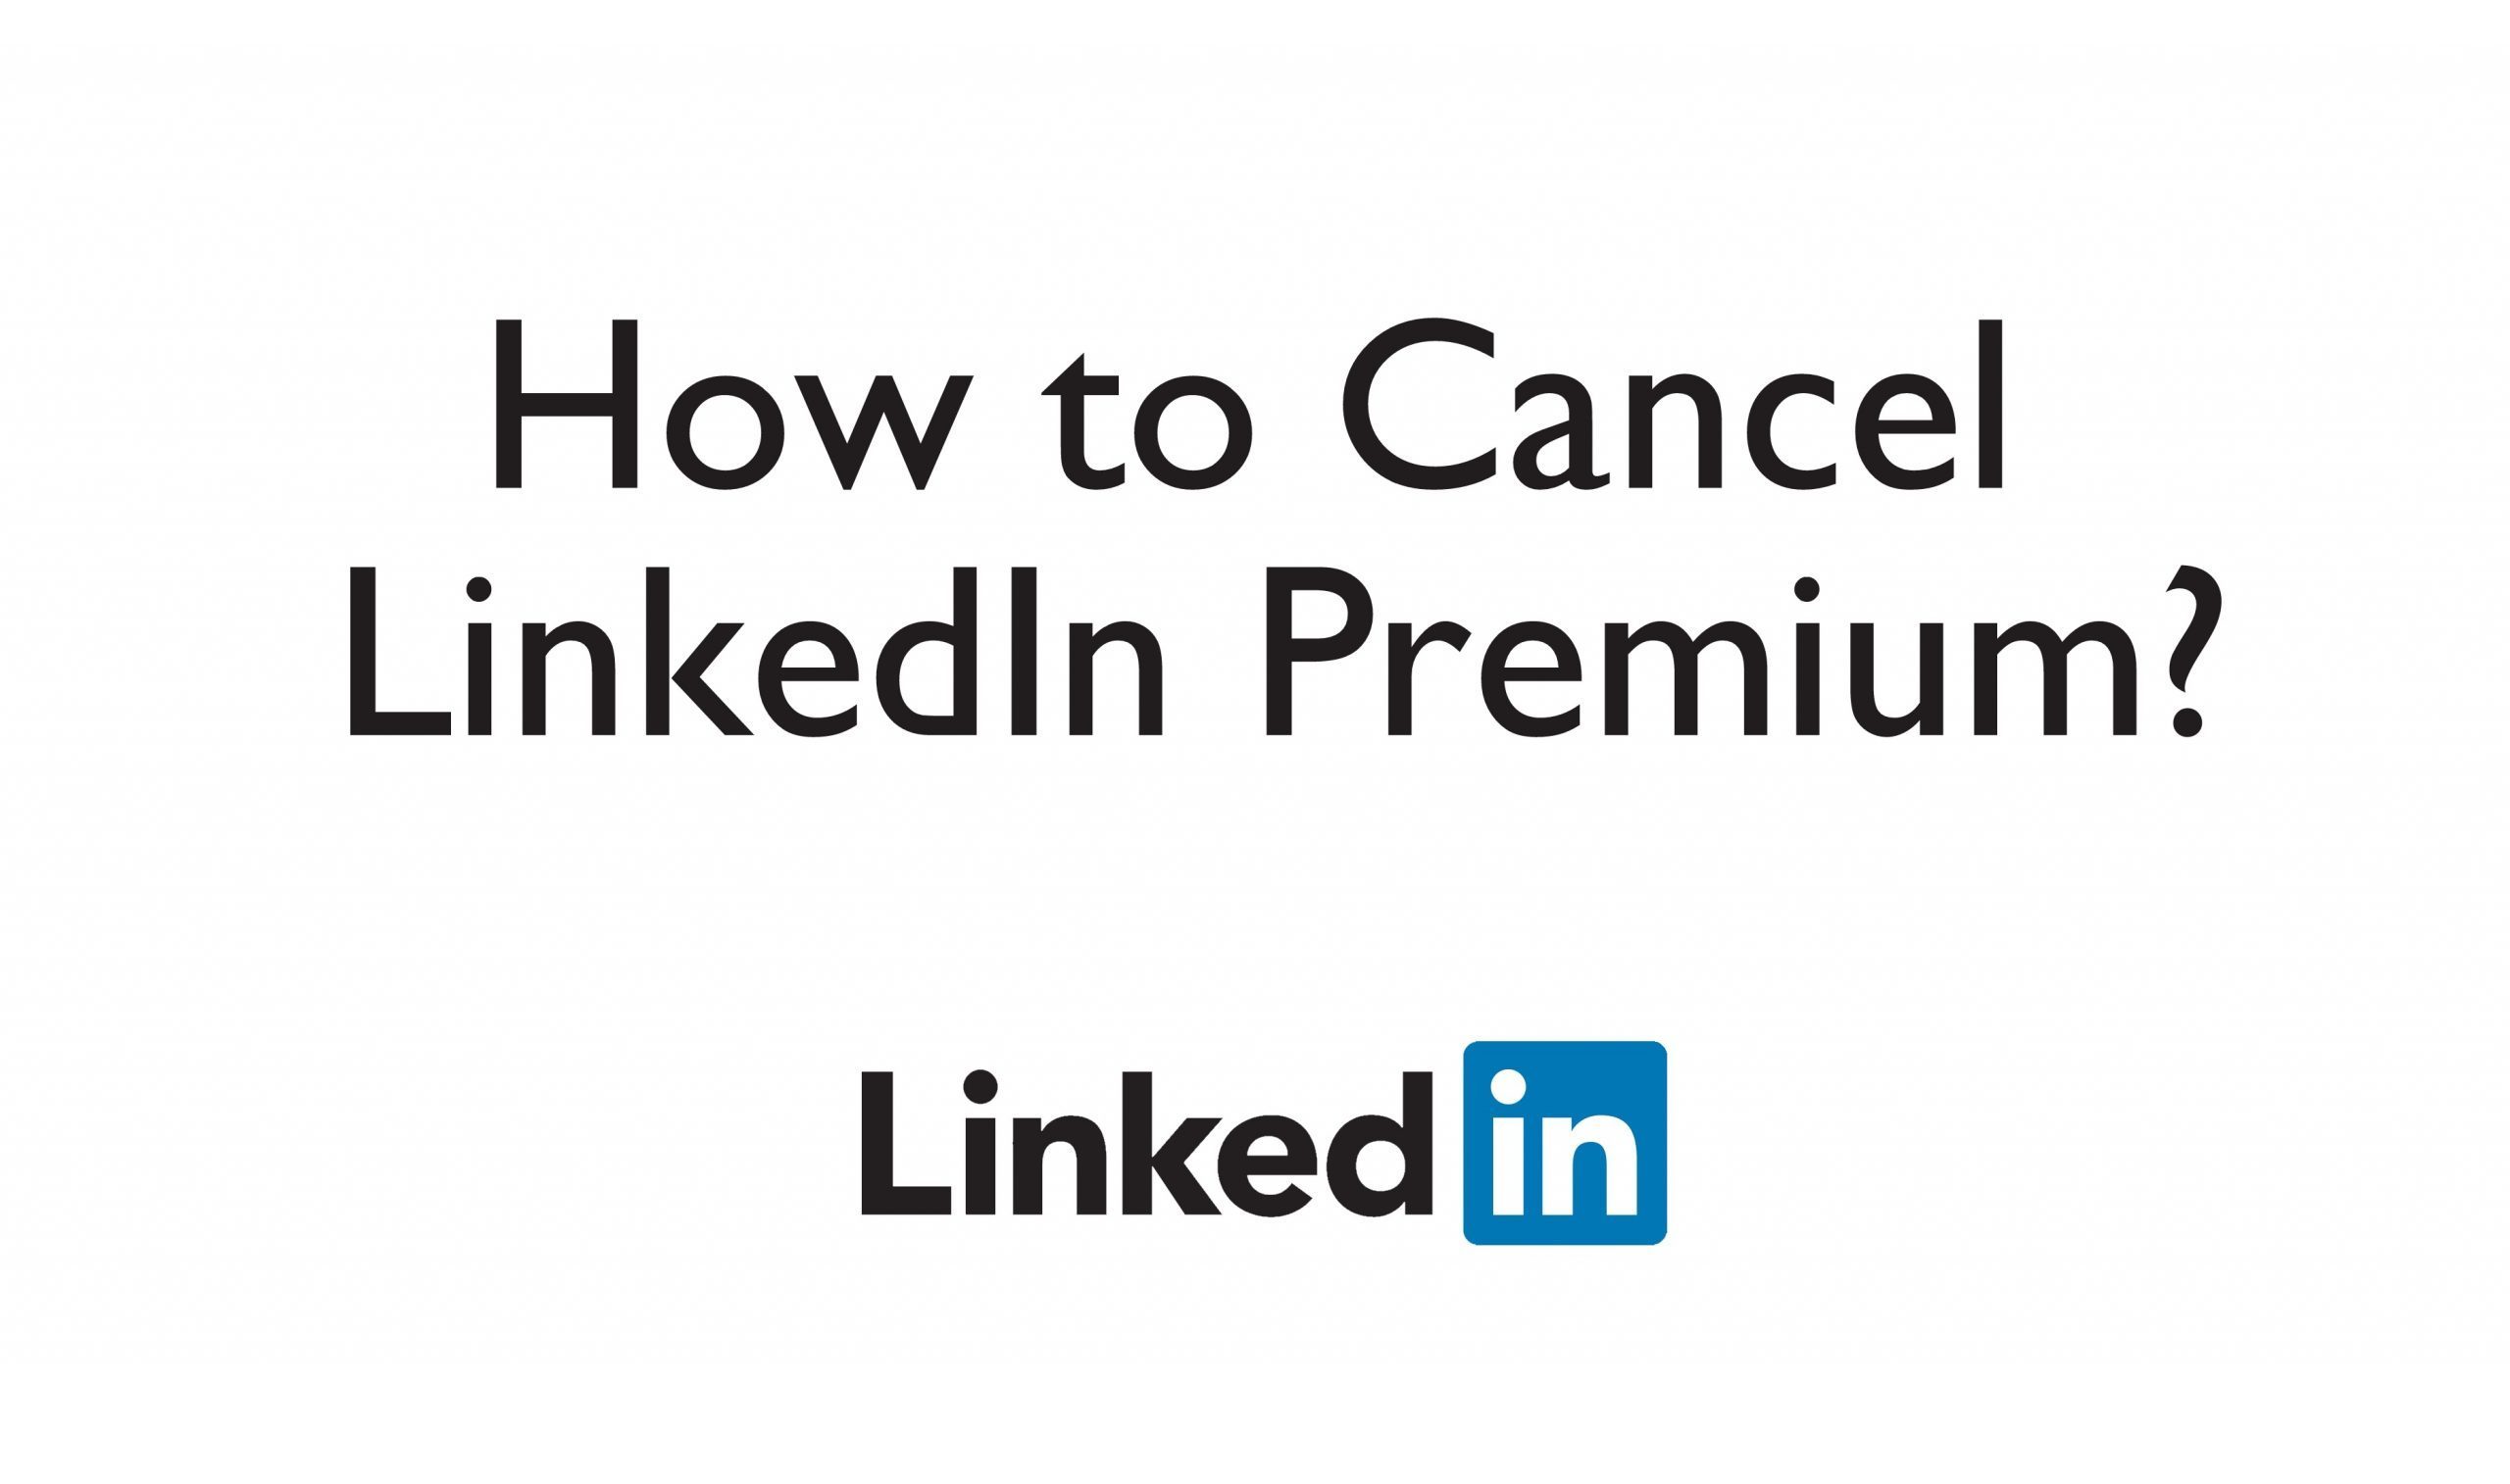 Nola bertan behera utzi LinkedIn Premium Harpidetza 2020an
